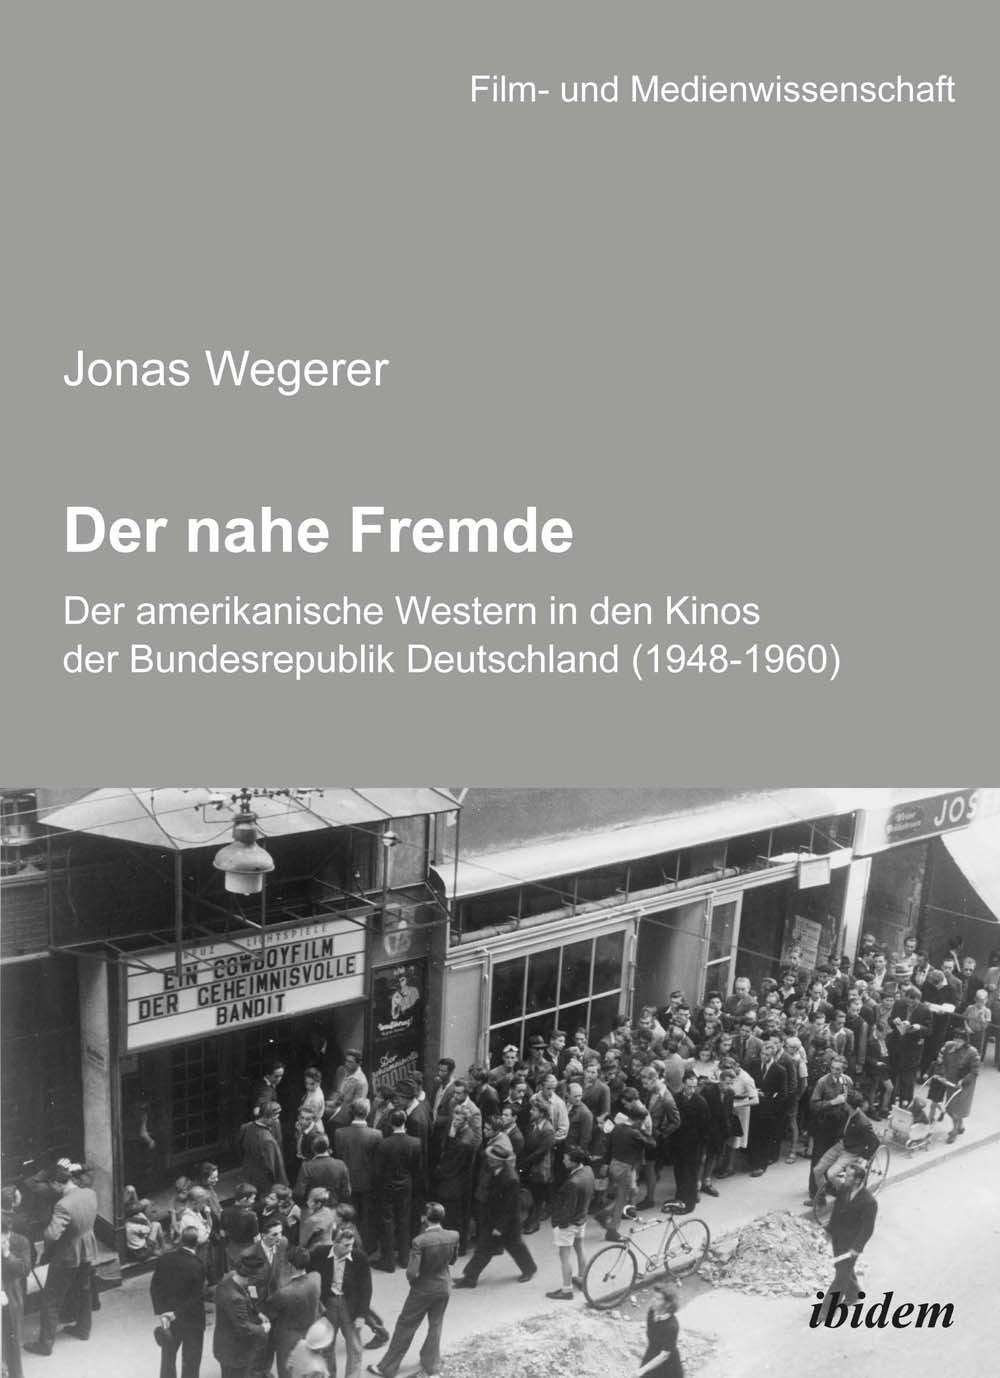 Der nahe Fremde: Der amerikanische Western in den Kinos der Bundesrepublik Deutschland (1948-1960)